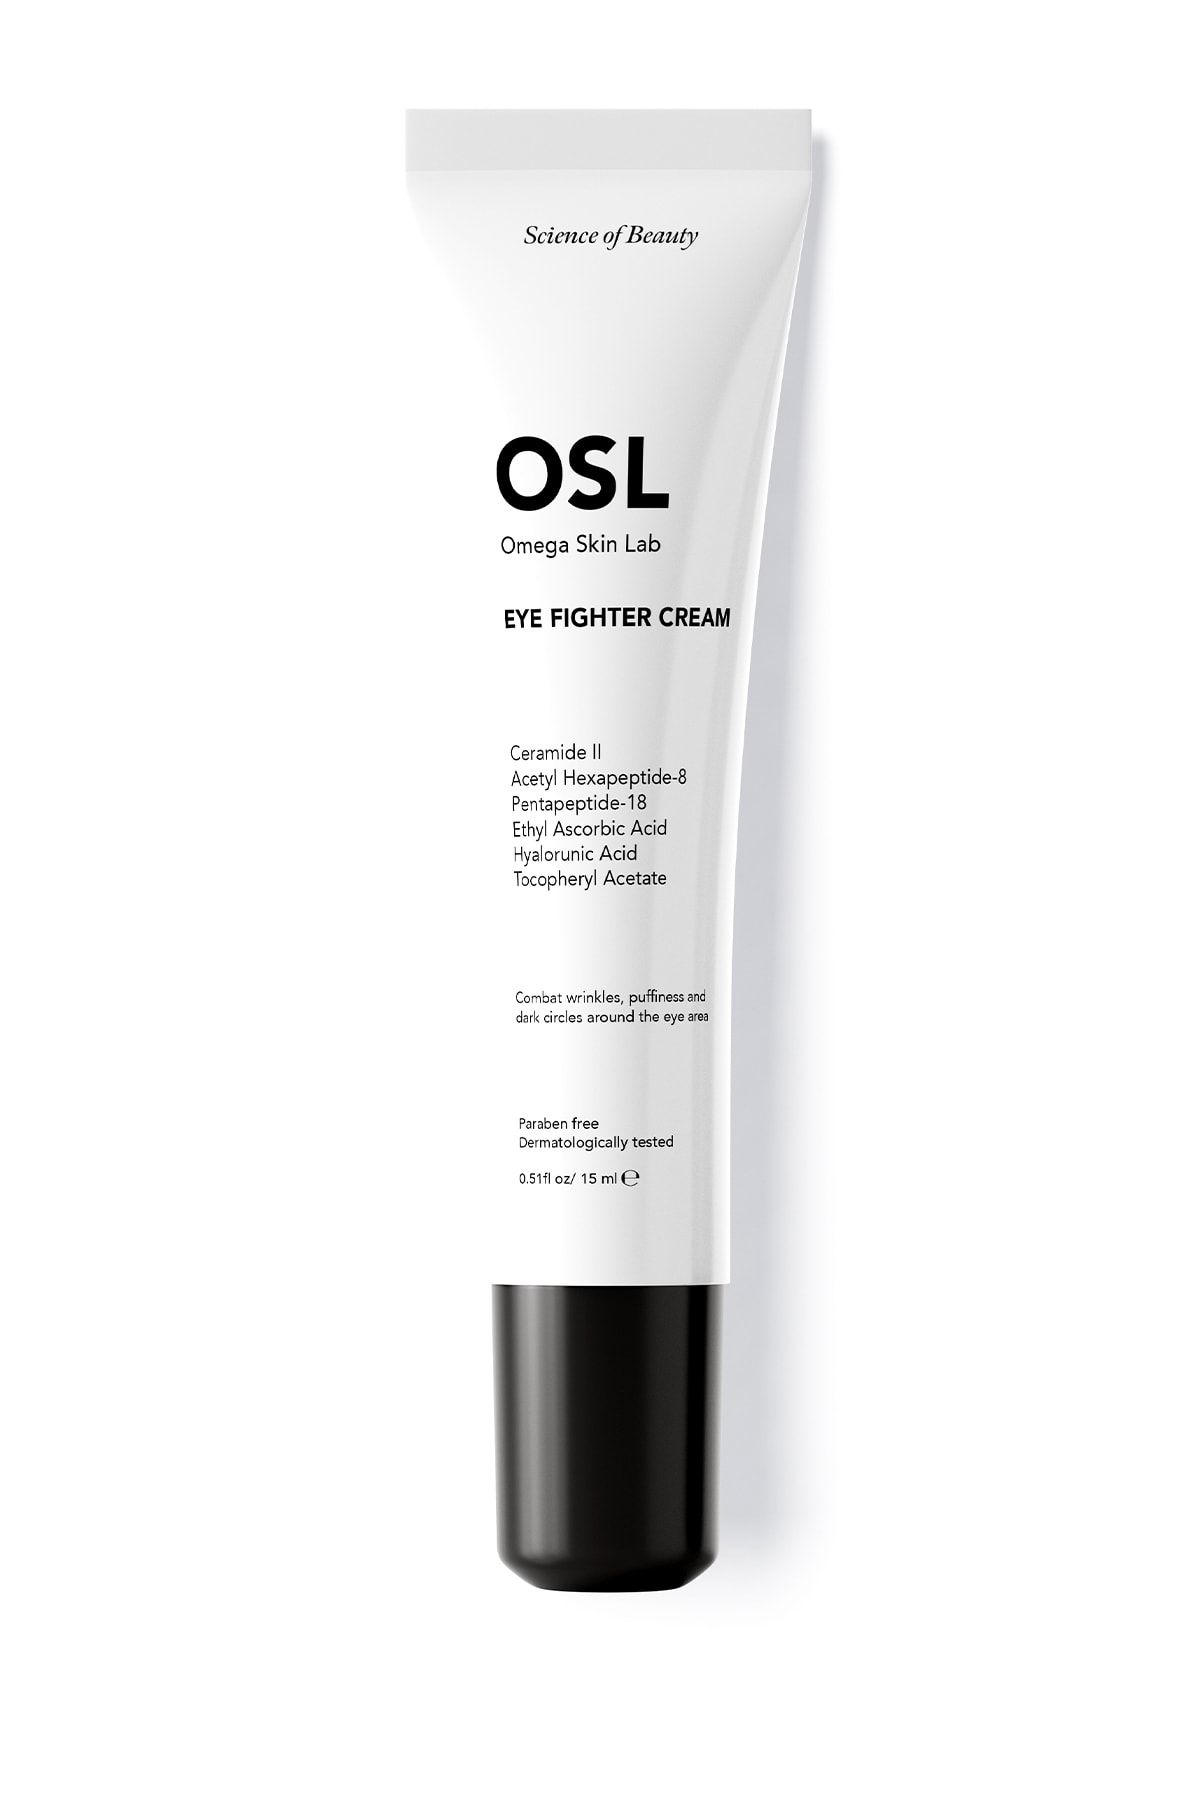 OSL Omega Skin Lab Eye Fighter Cream 15ml (GÖZ ÇEVRESİ KREMİ)